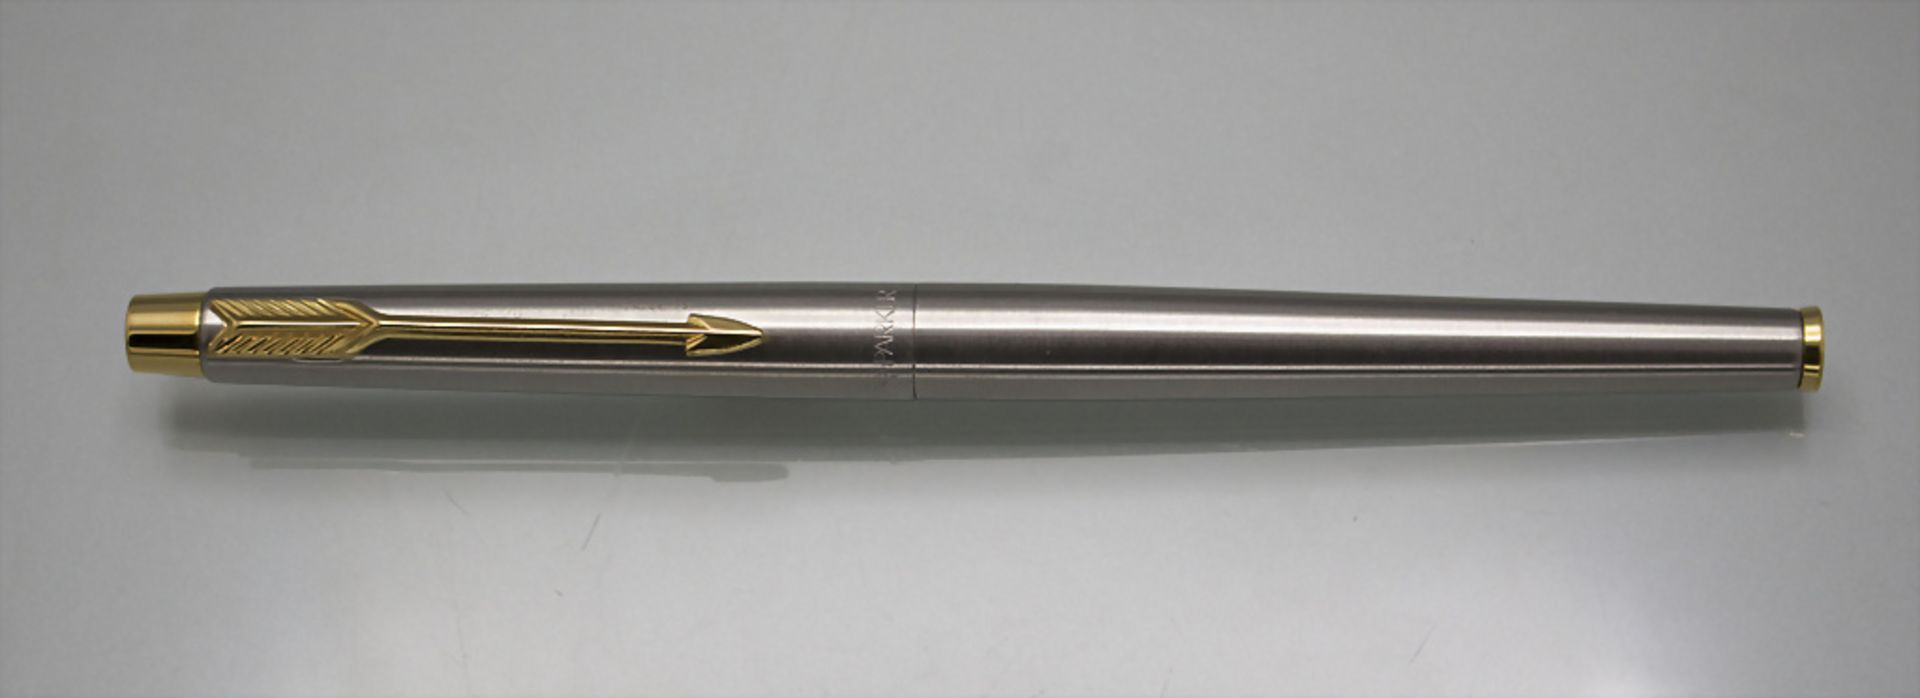 Kugelschreiber / A ballpoint pen, Parker, Vereinigtes Königreich/UK